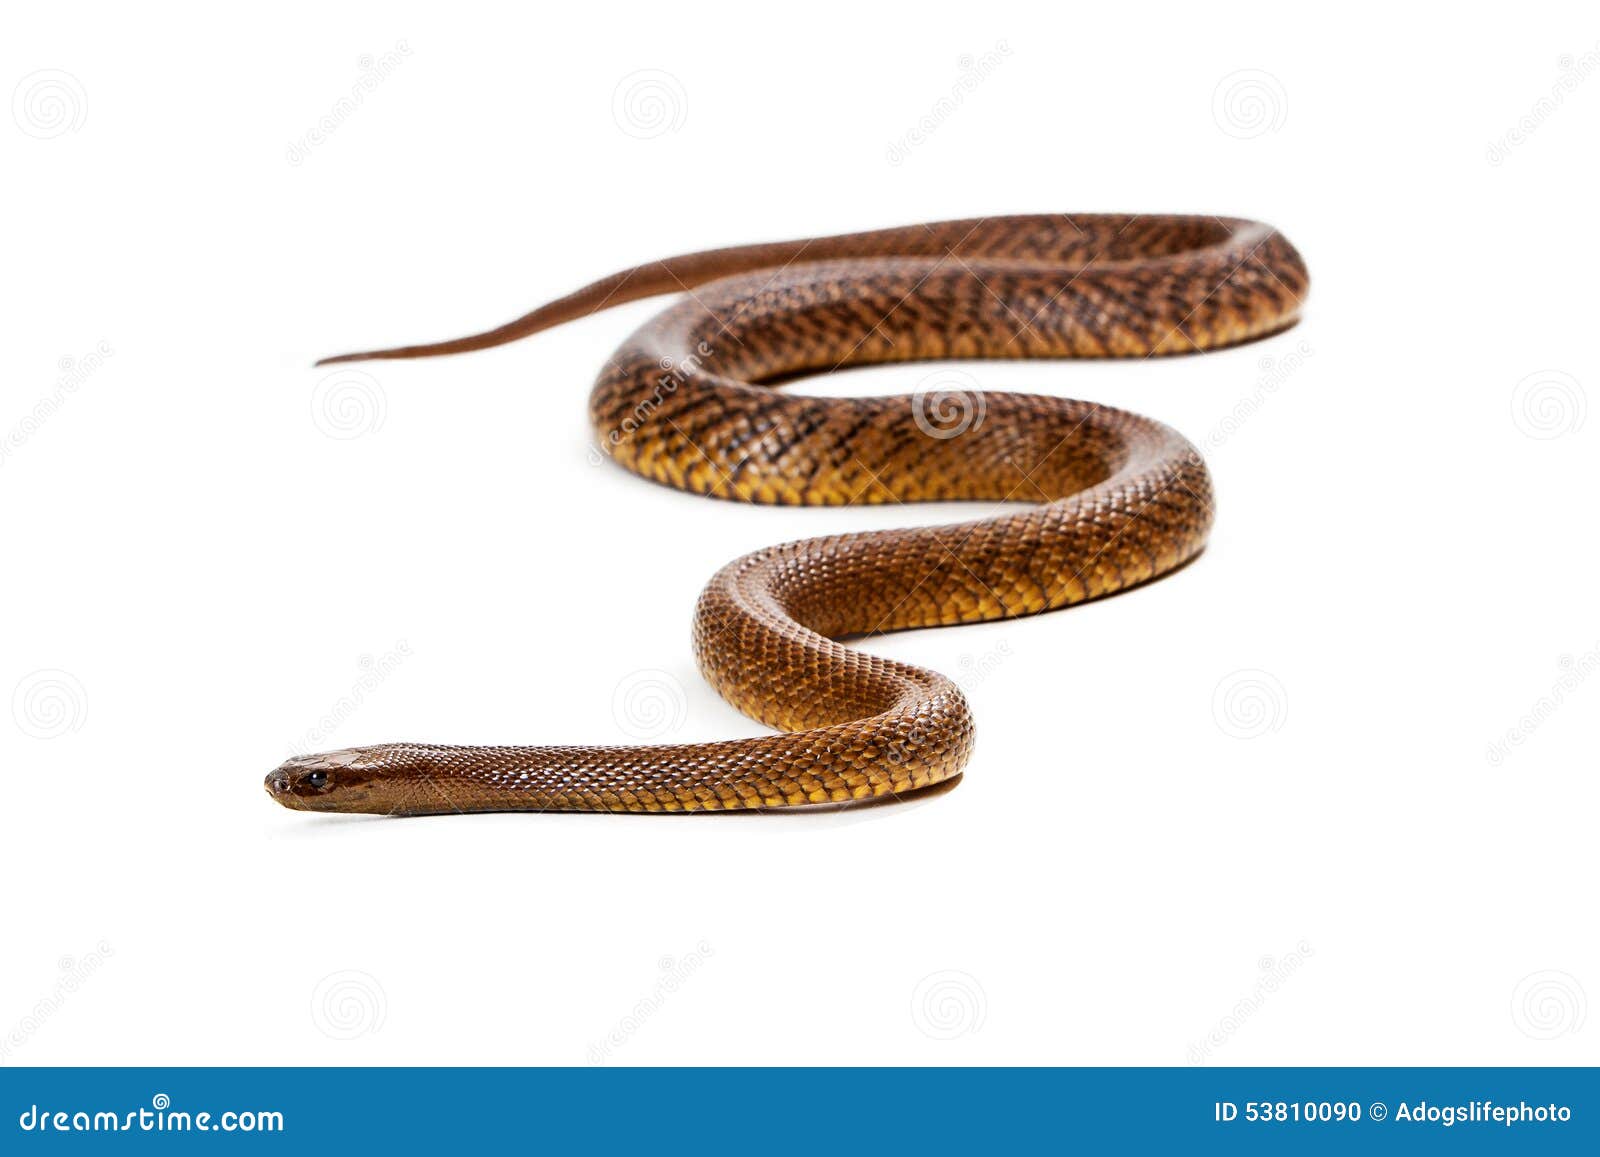 inland taipan snake  on white